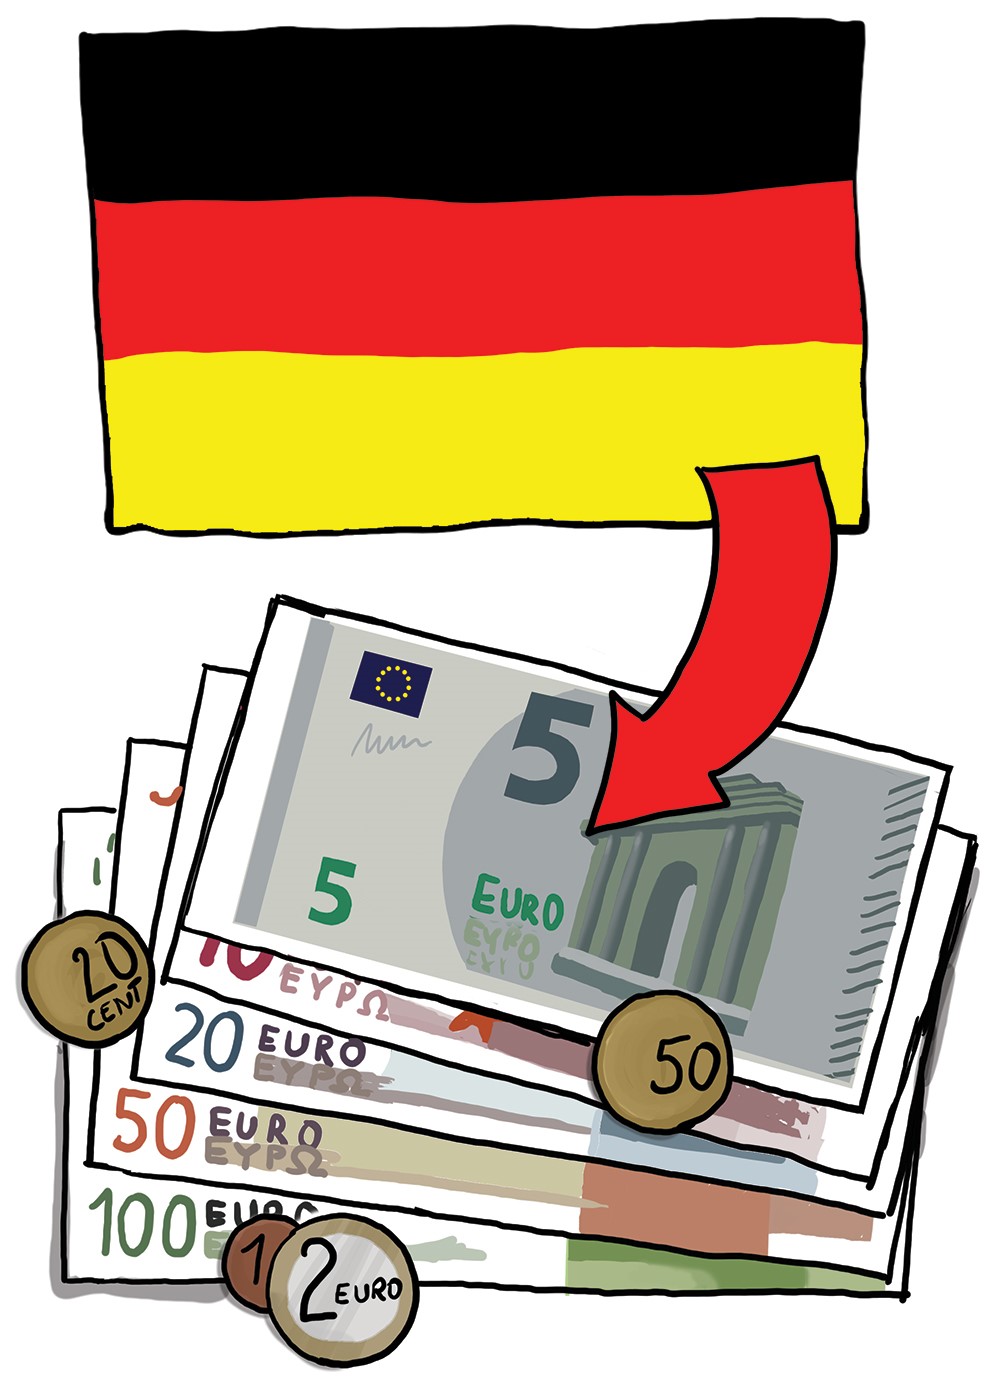 Die Fahne von Deutschland. Darunter sind Geldscheine. Fahne und Geld sind mit einem Pfeil verbunden.